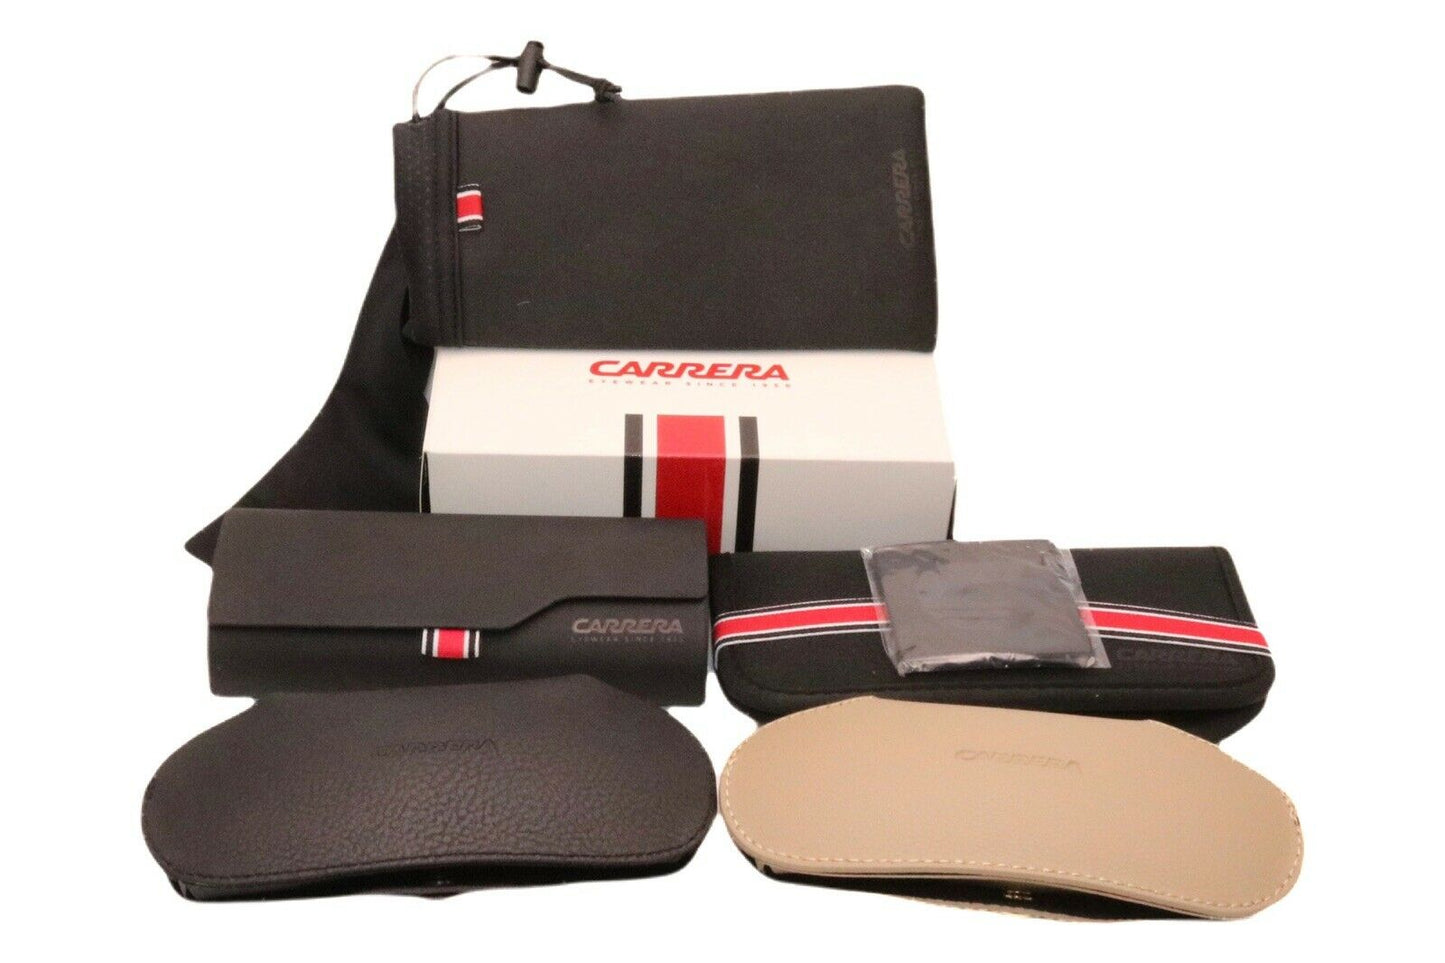 Carrera CARRERA 8864-009Q 00 55mm New Eyeglasses